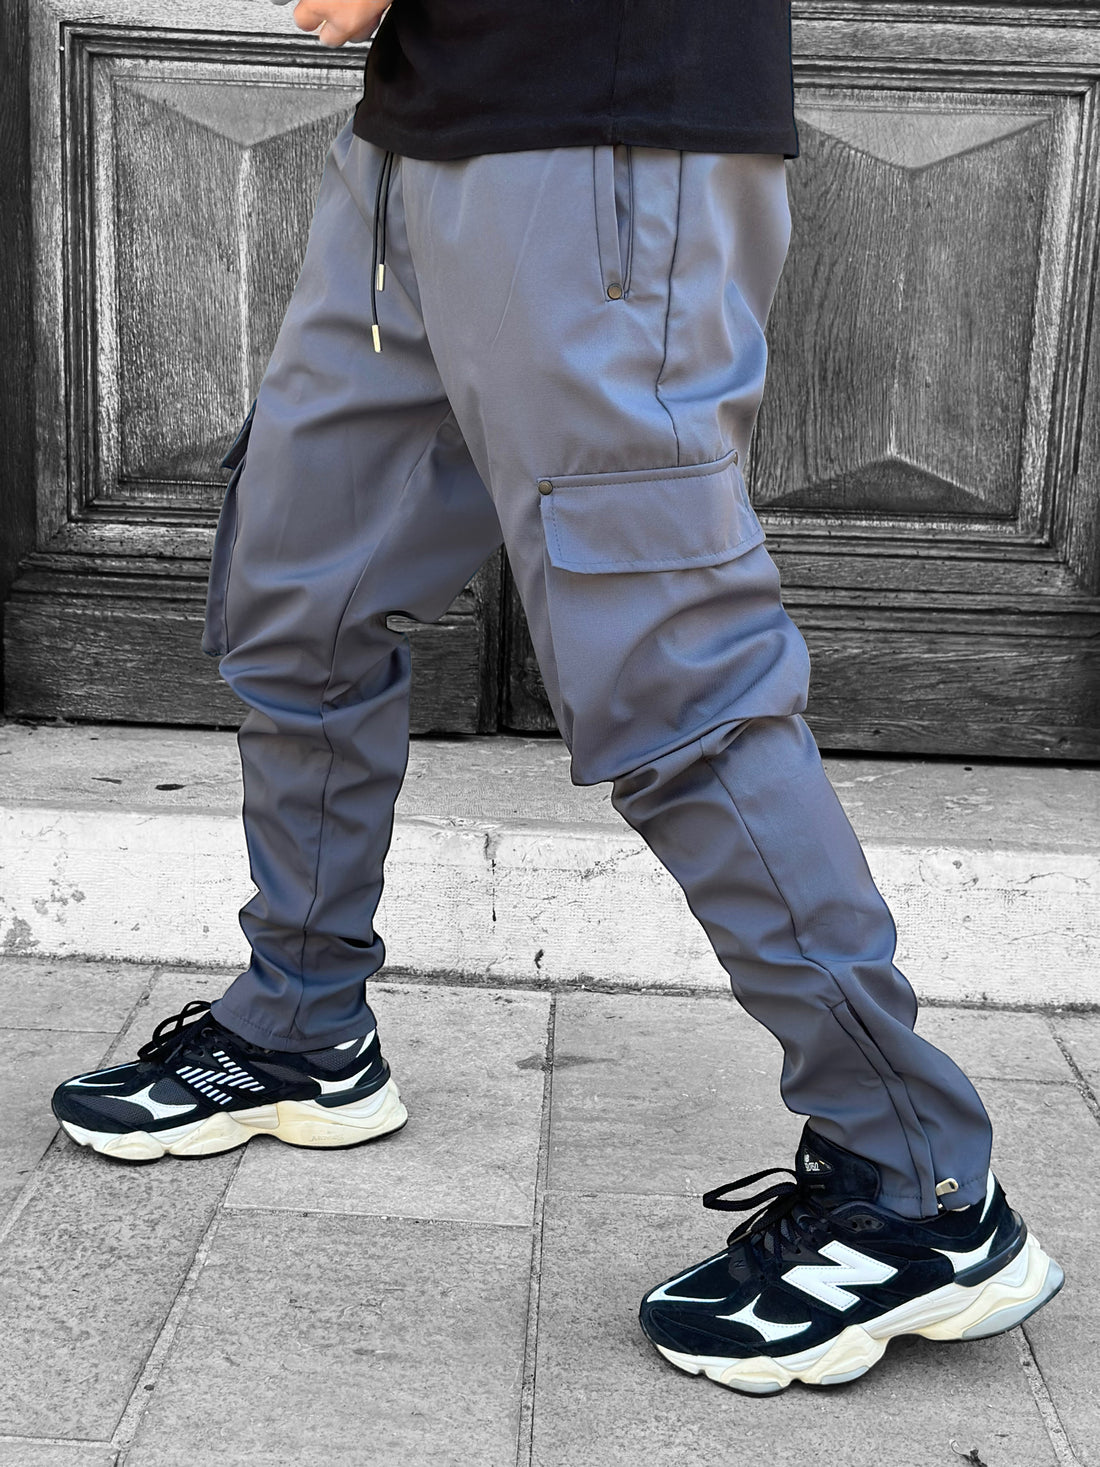 IKAO - Charcoal zip cargo pants #466 